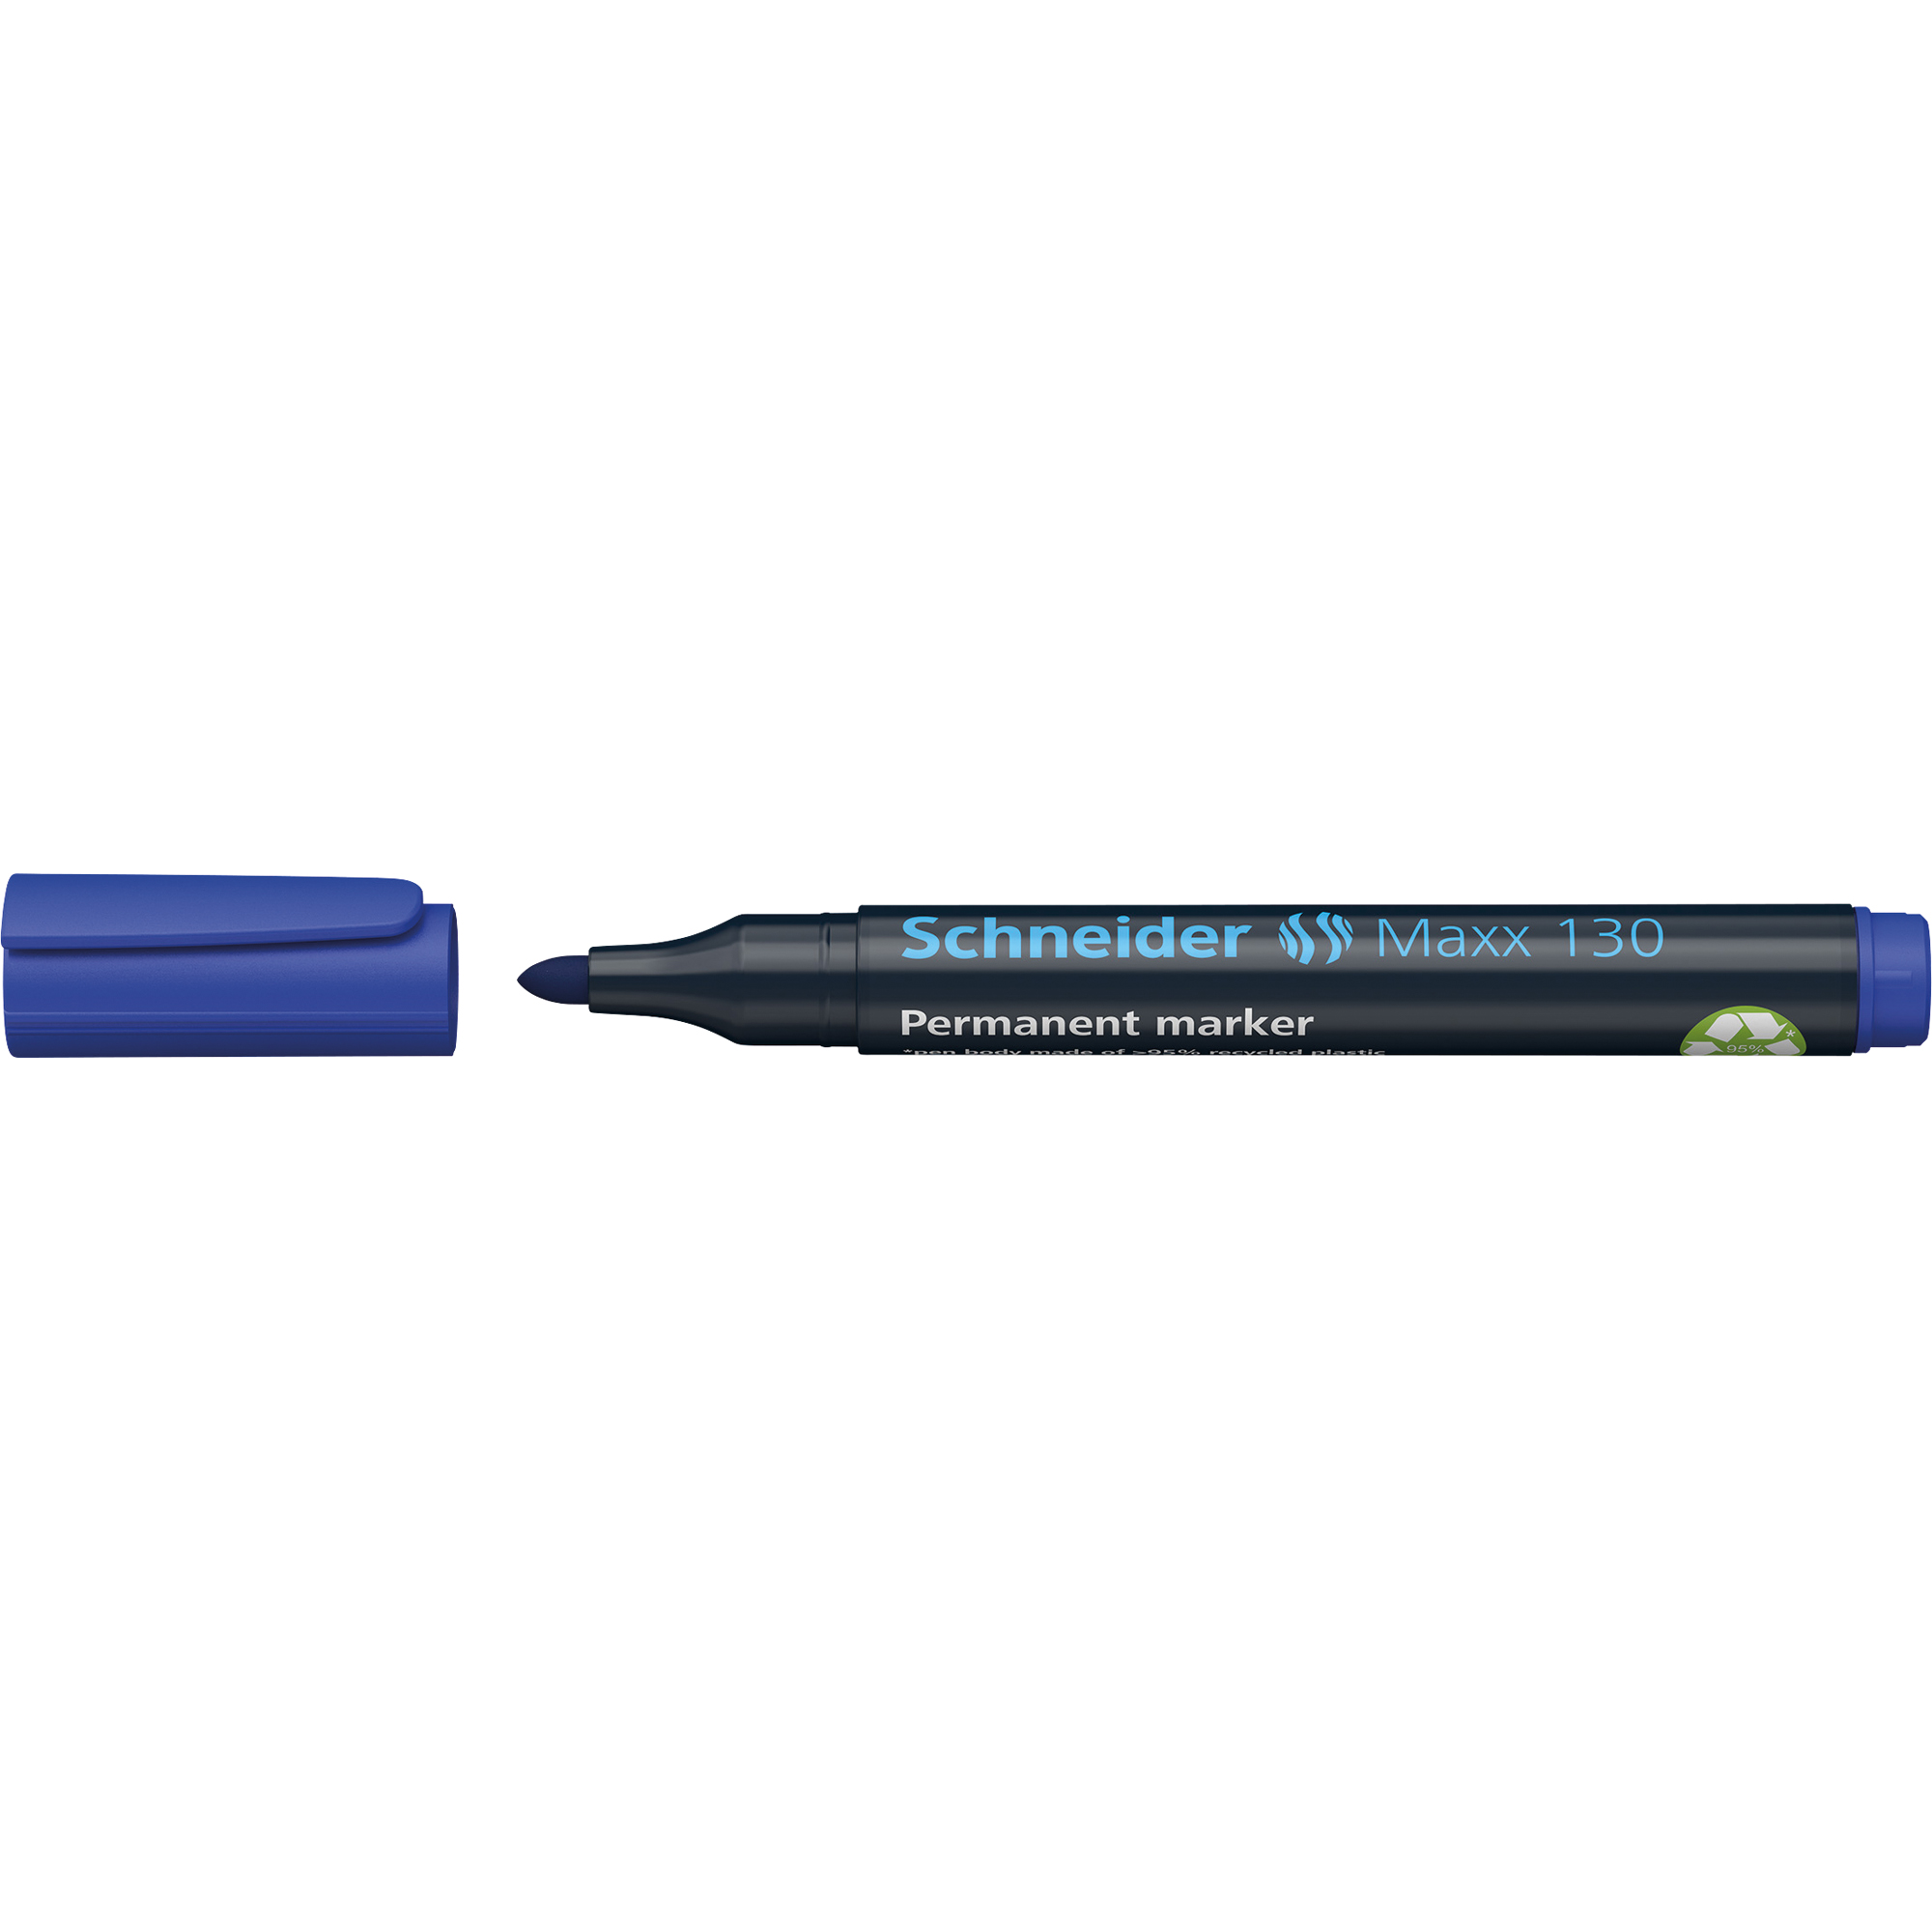 Schneider Permanentmarker Maxx 130 nachfüllbar blau